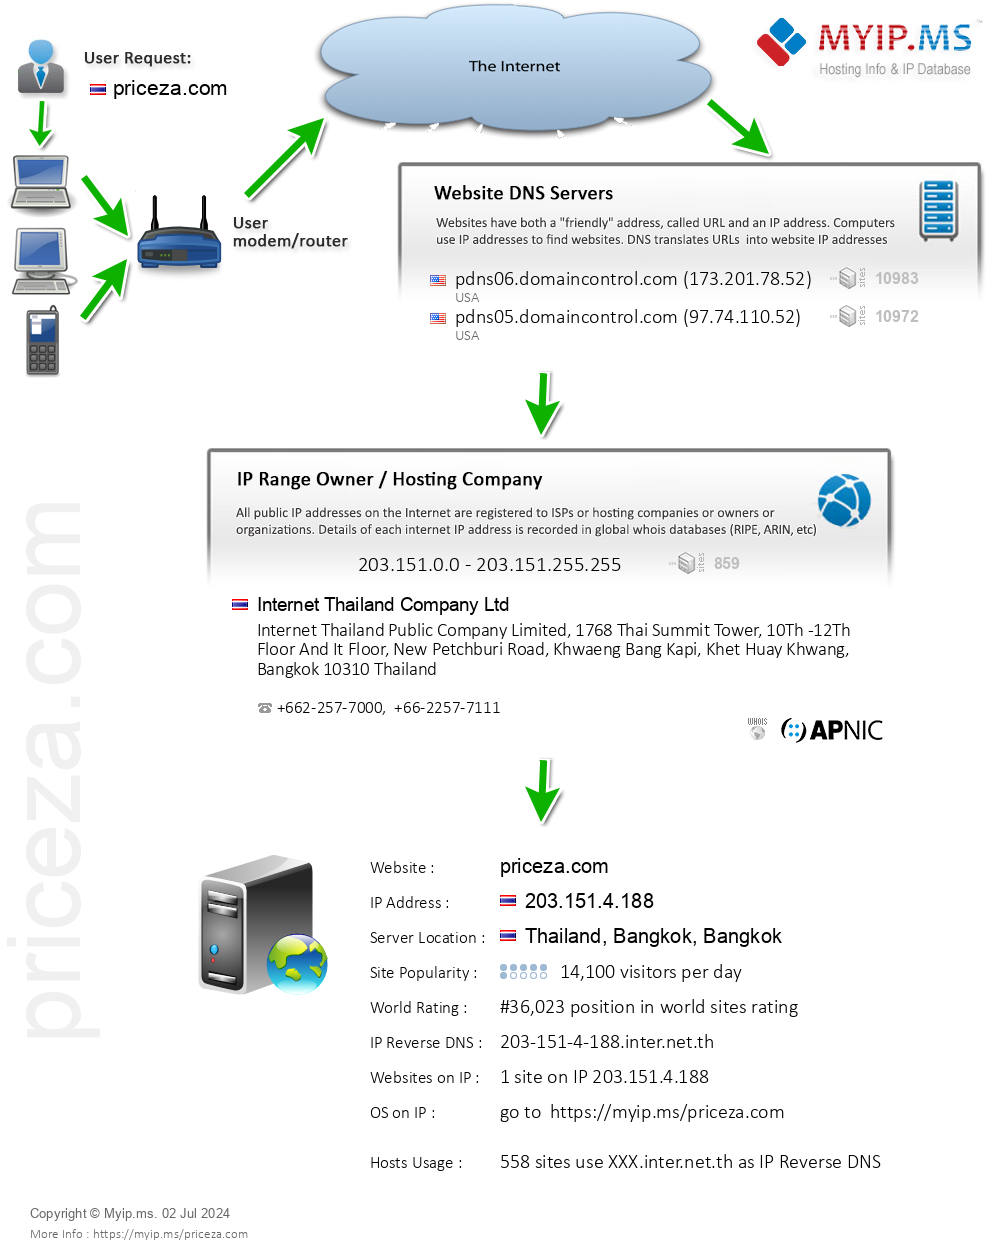 Priceza.com - Website Hosting Visual IP Diagram